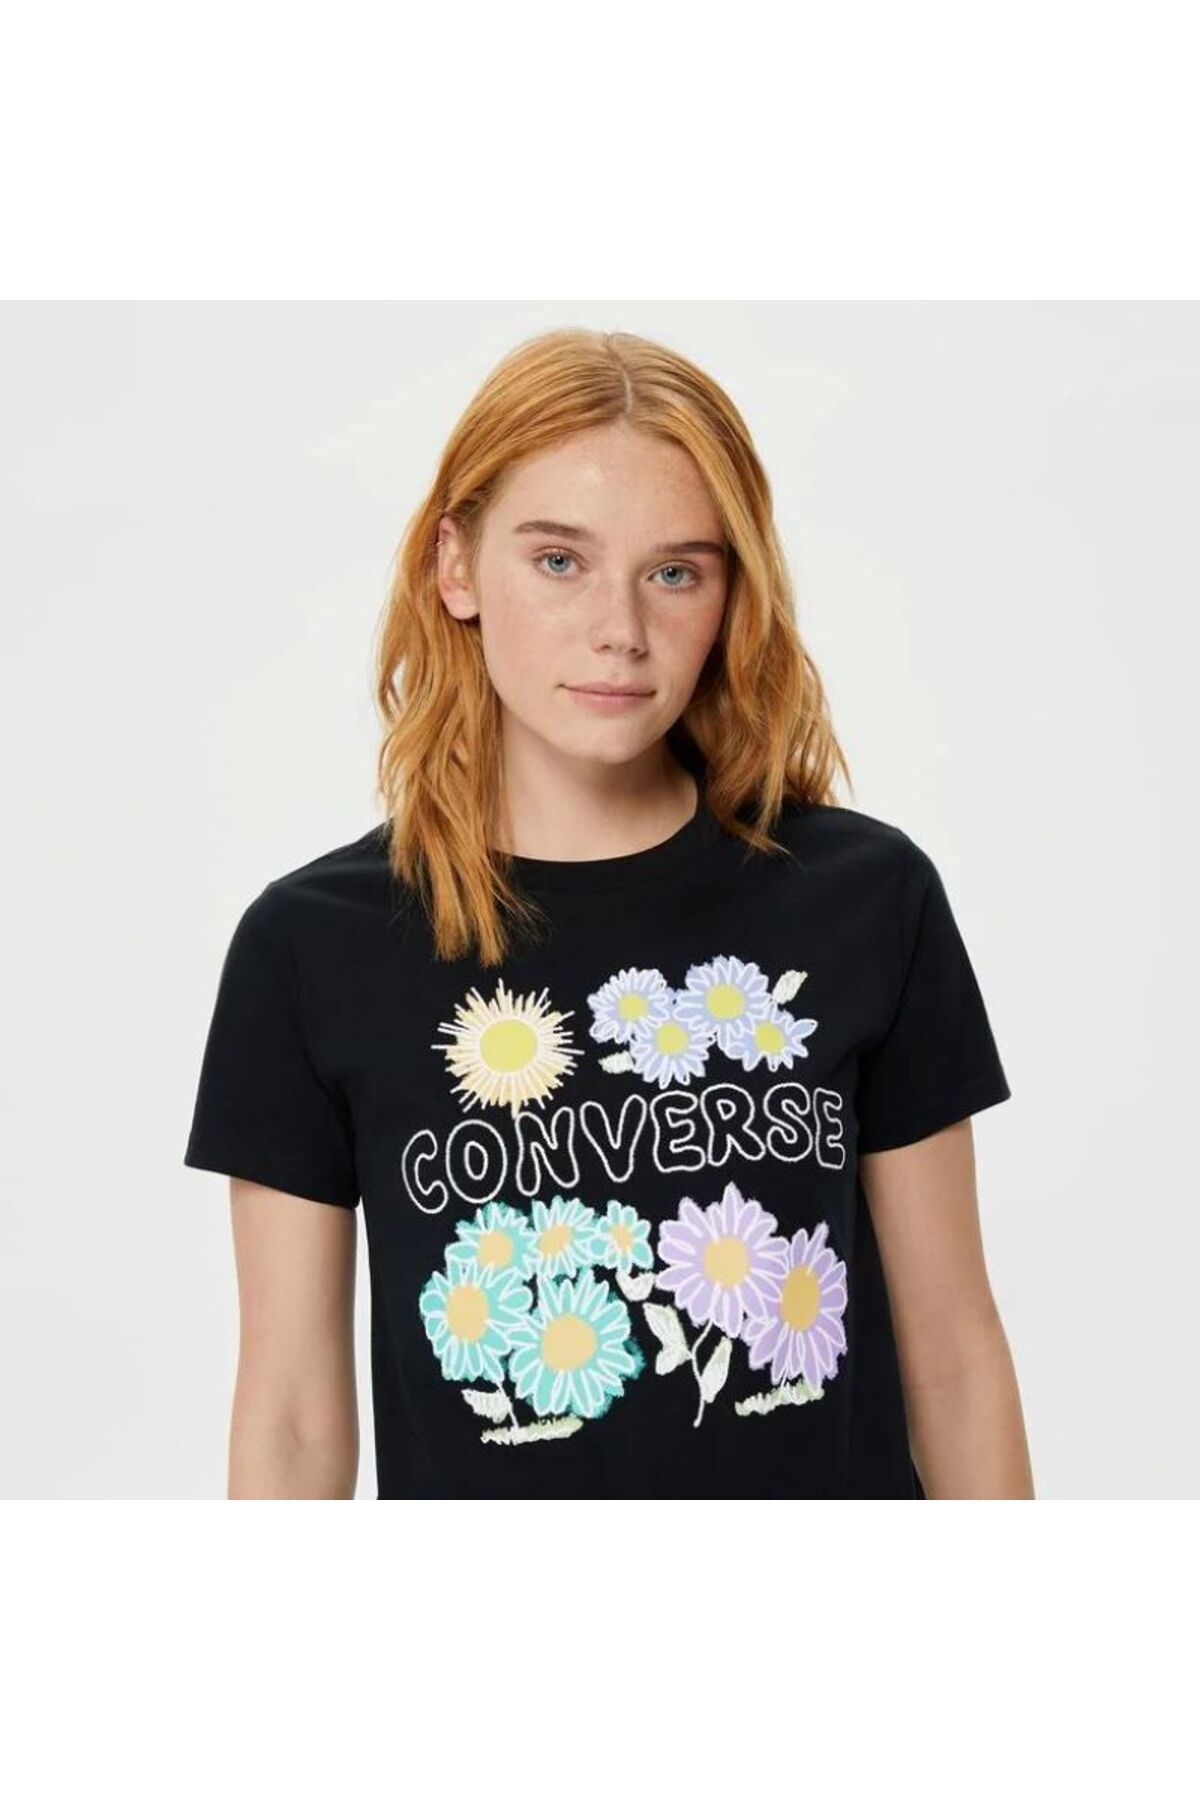 Converse Grow Together Floral Kadın Siyah T-Shirt